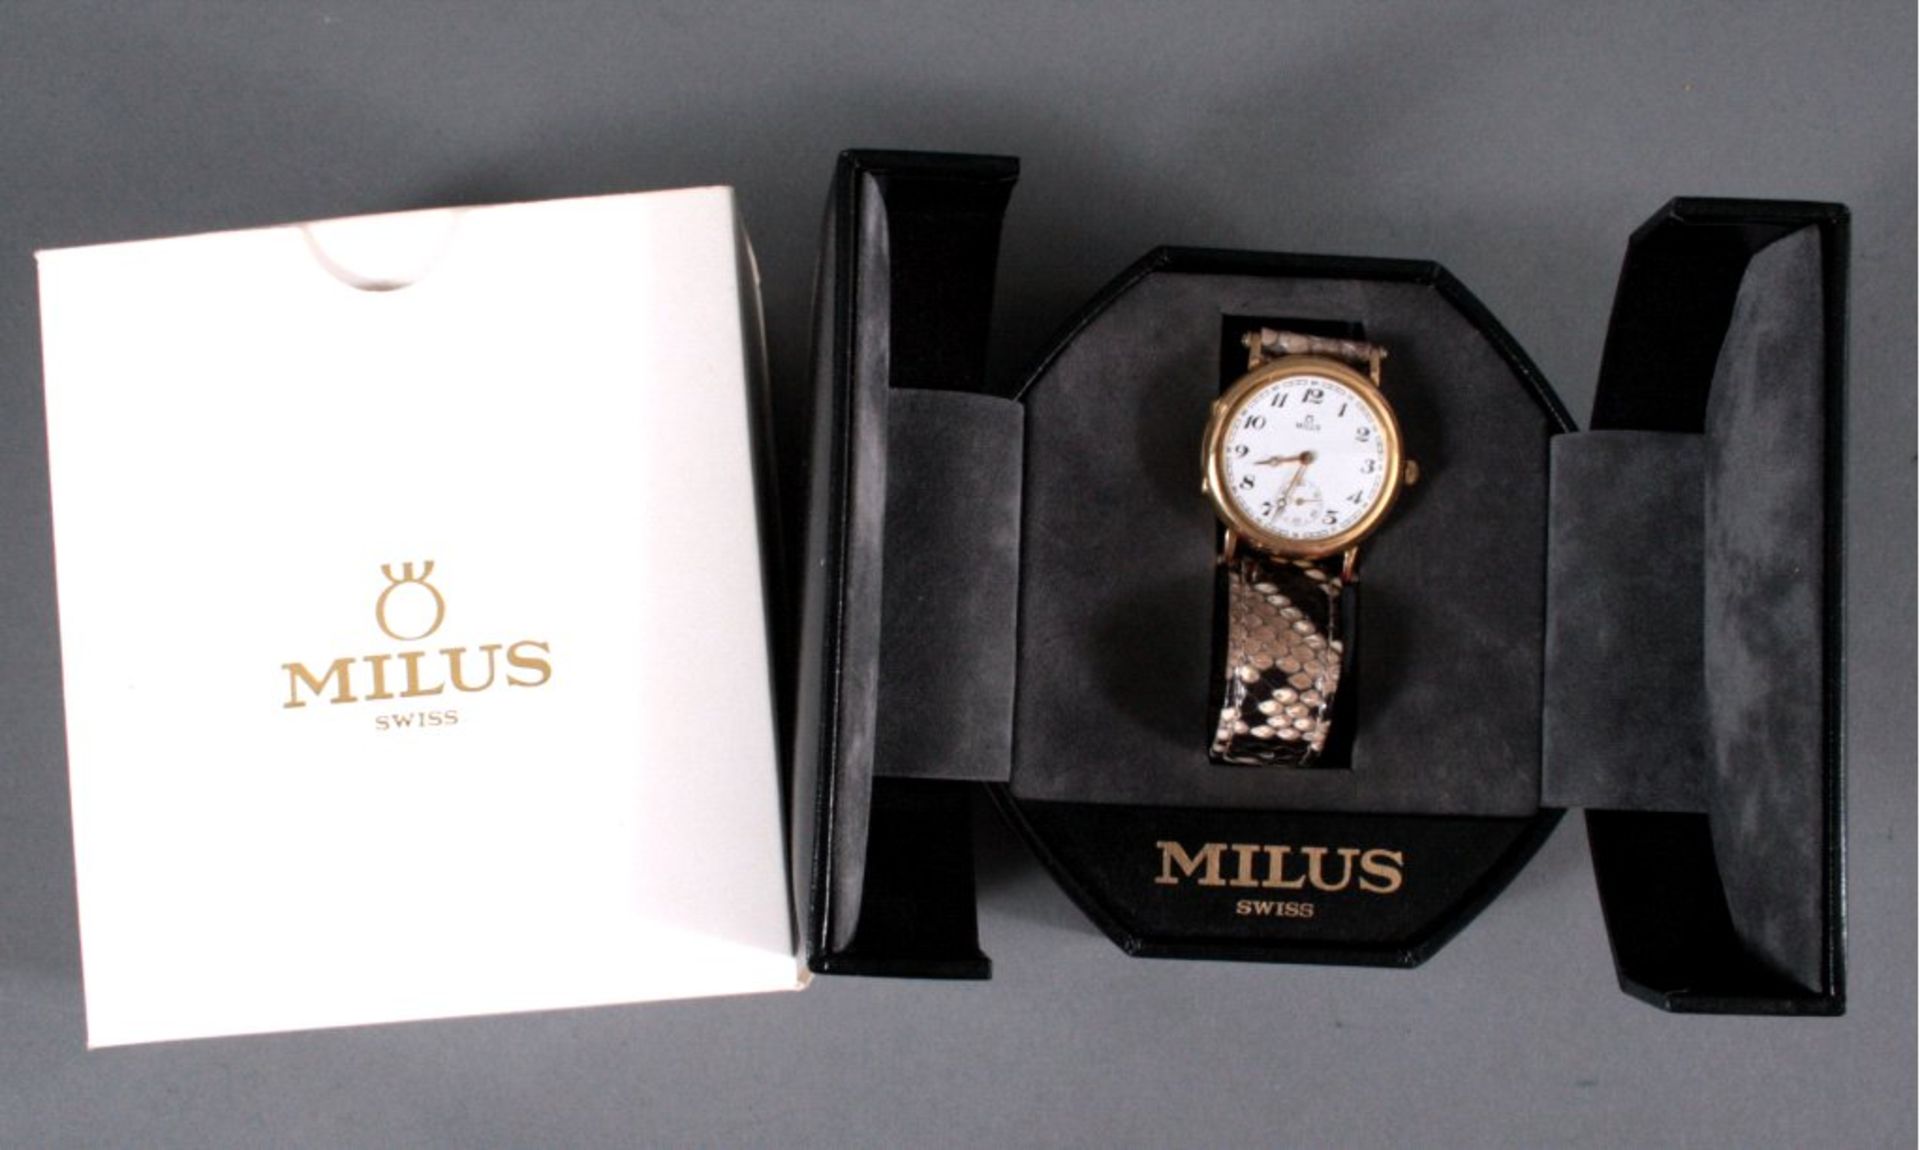 Damenarmbanduhr der Marke Milus, 750/000 GGArmband aus Schlangenleder, funktionsfähigMindestpreis: - Bild 2 aus 3